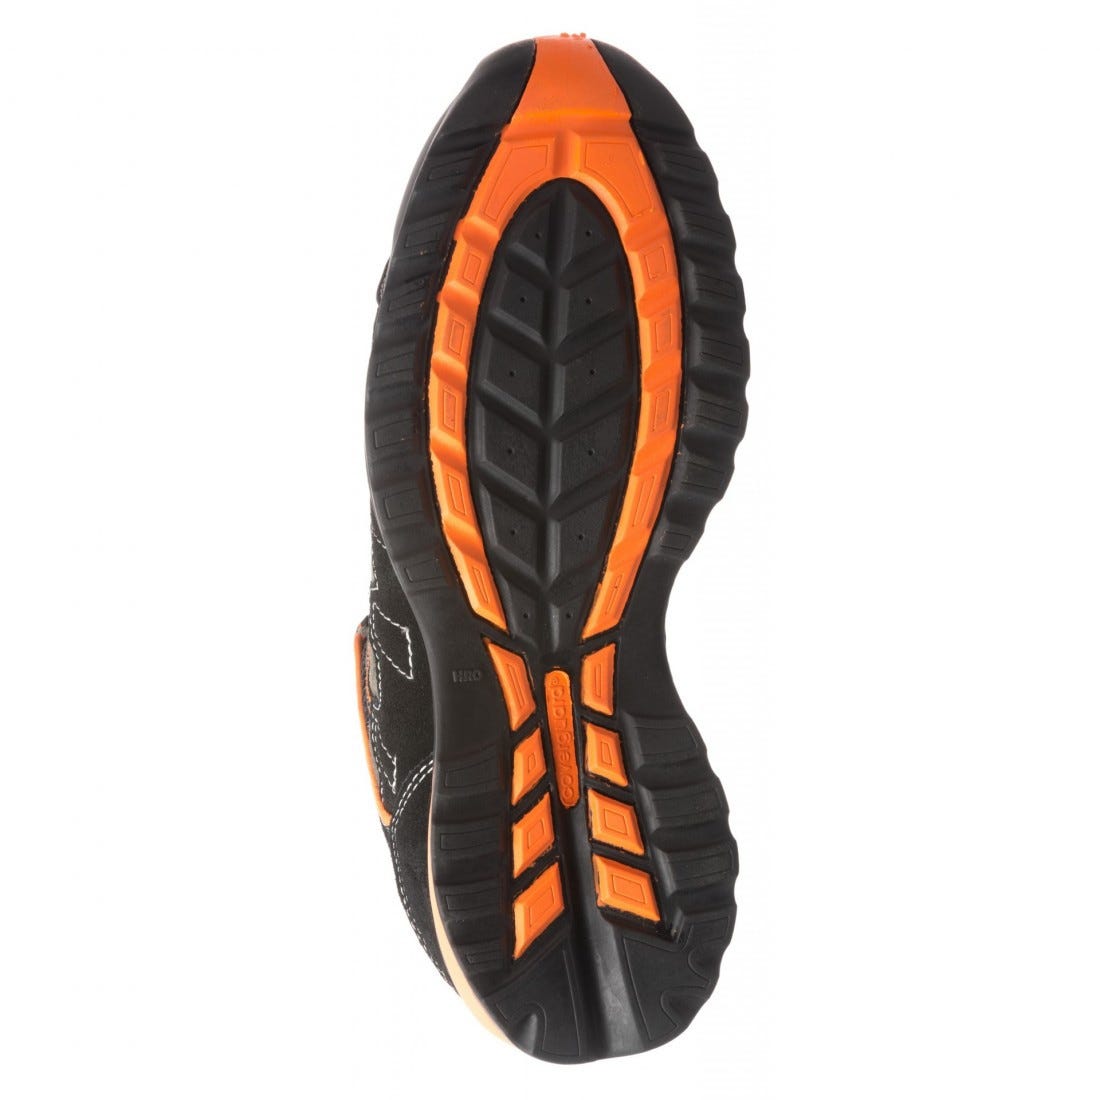 Chaussures de sécurité HELVITE S1P composite noir/orange - COVERGUARD - Taille 40 3